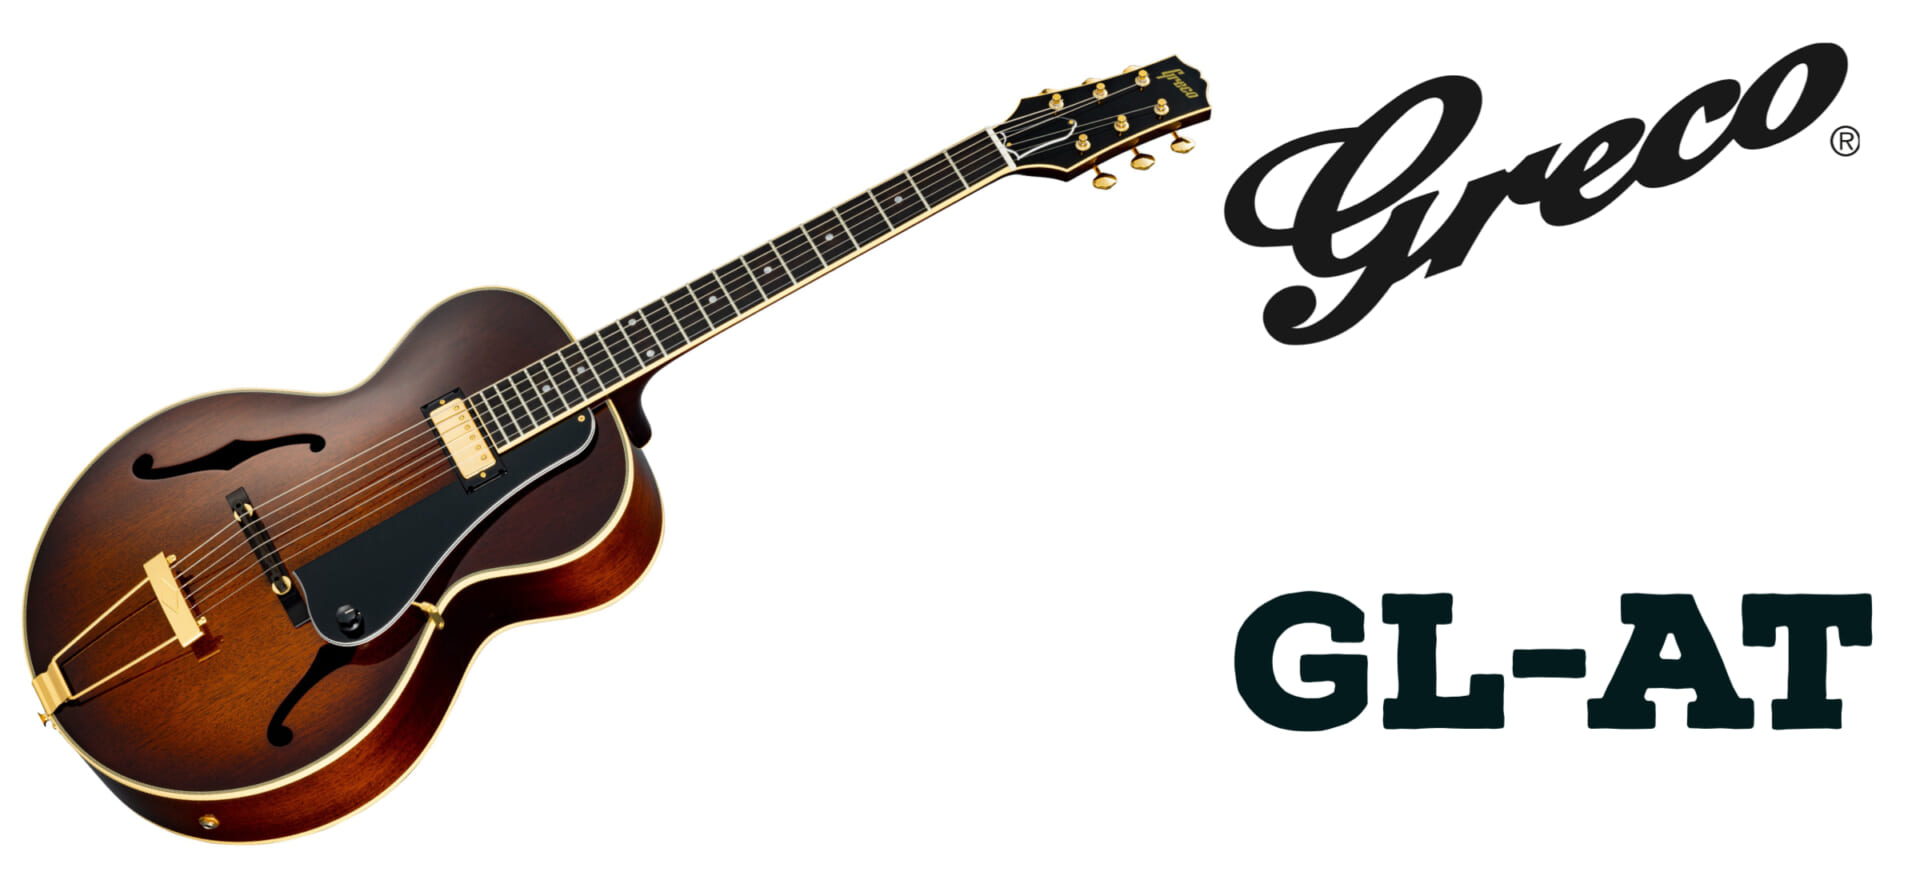 1920年代のアメリカン・ギターをイメージしたGL-AT、グレコより発売